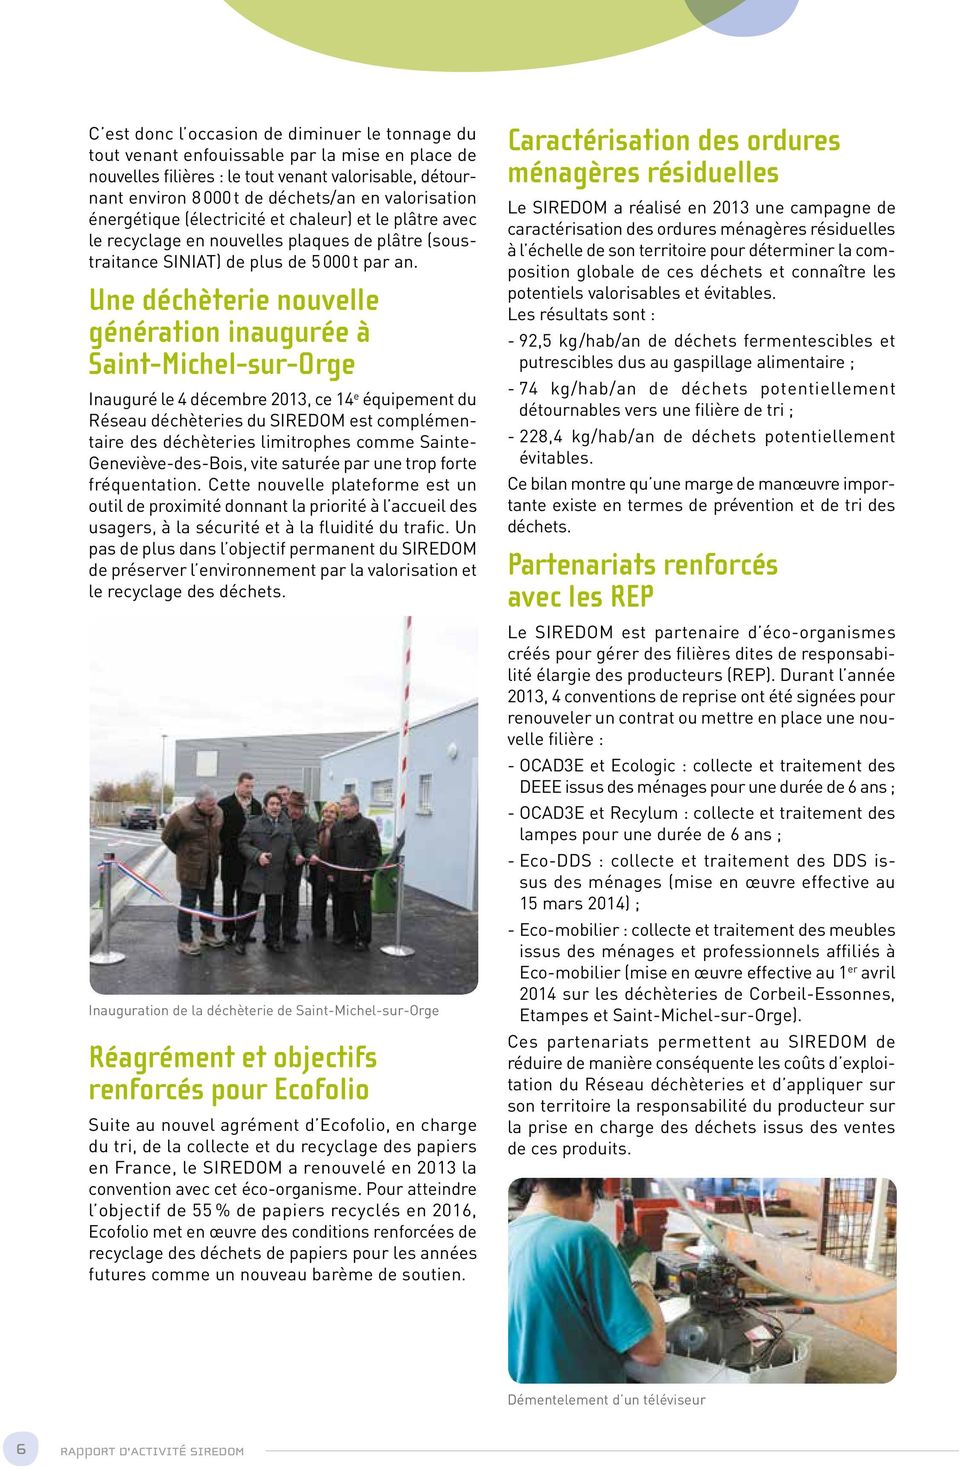 Une déchèterie nouvelle génération inaugurée à Saint-Michel-sur-Orge Inauguré le 4 décembre 2013, ce 14 e équipement du Réseau déchèteries du SIREDOM est complémentaire des déchèteries limitrophes